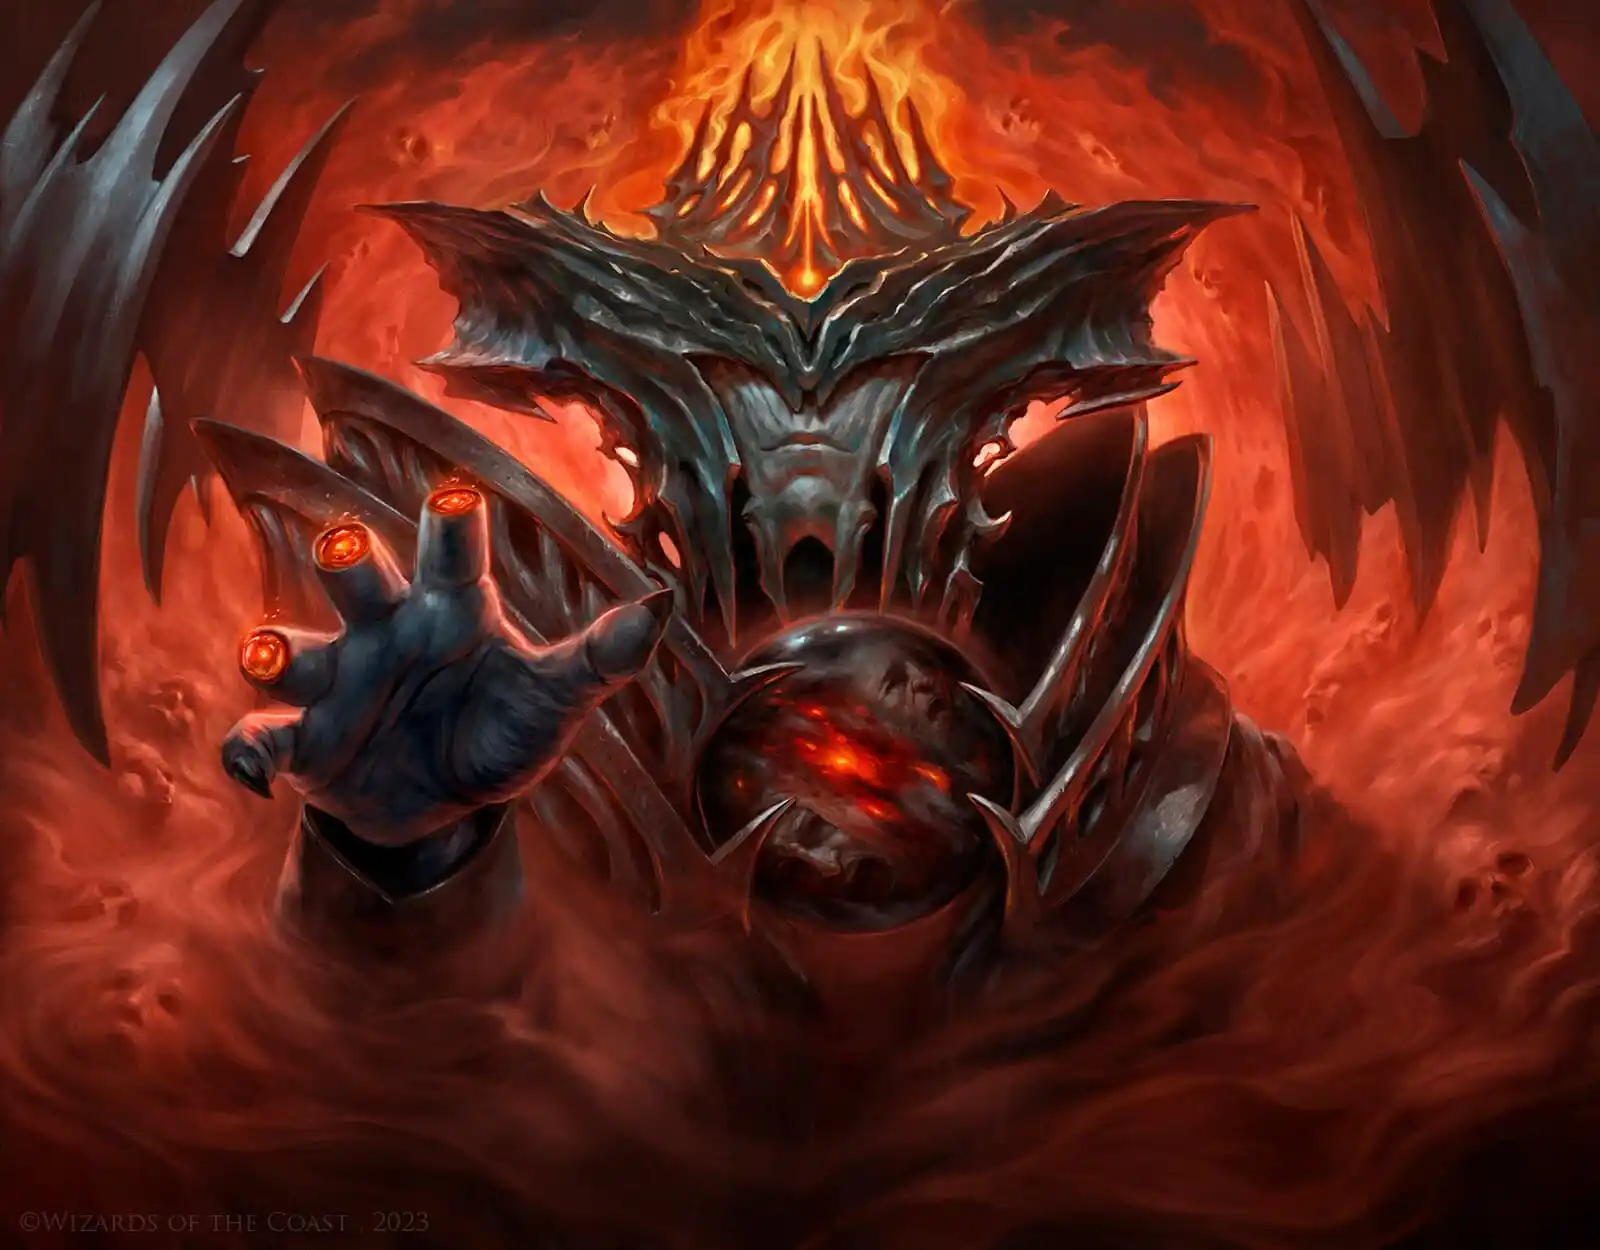 Imagen de Sauron, el Ojo sin párpados de Yigit Koroglu en el set MTG El Señor de los Anillos